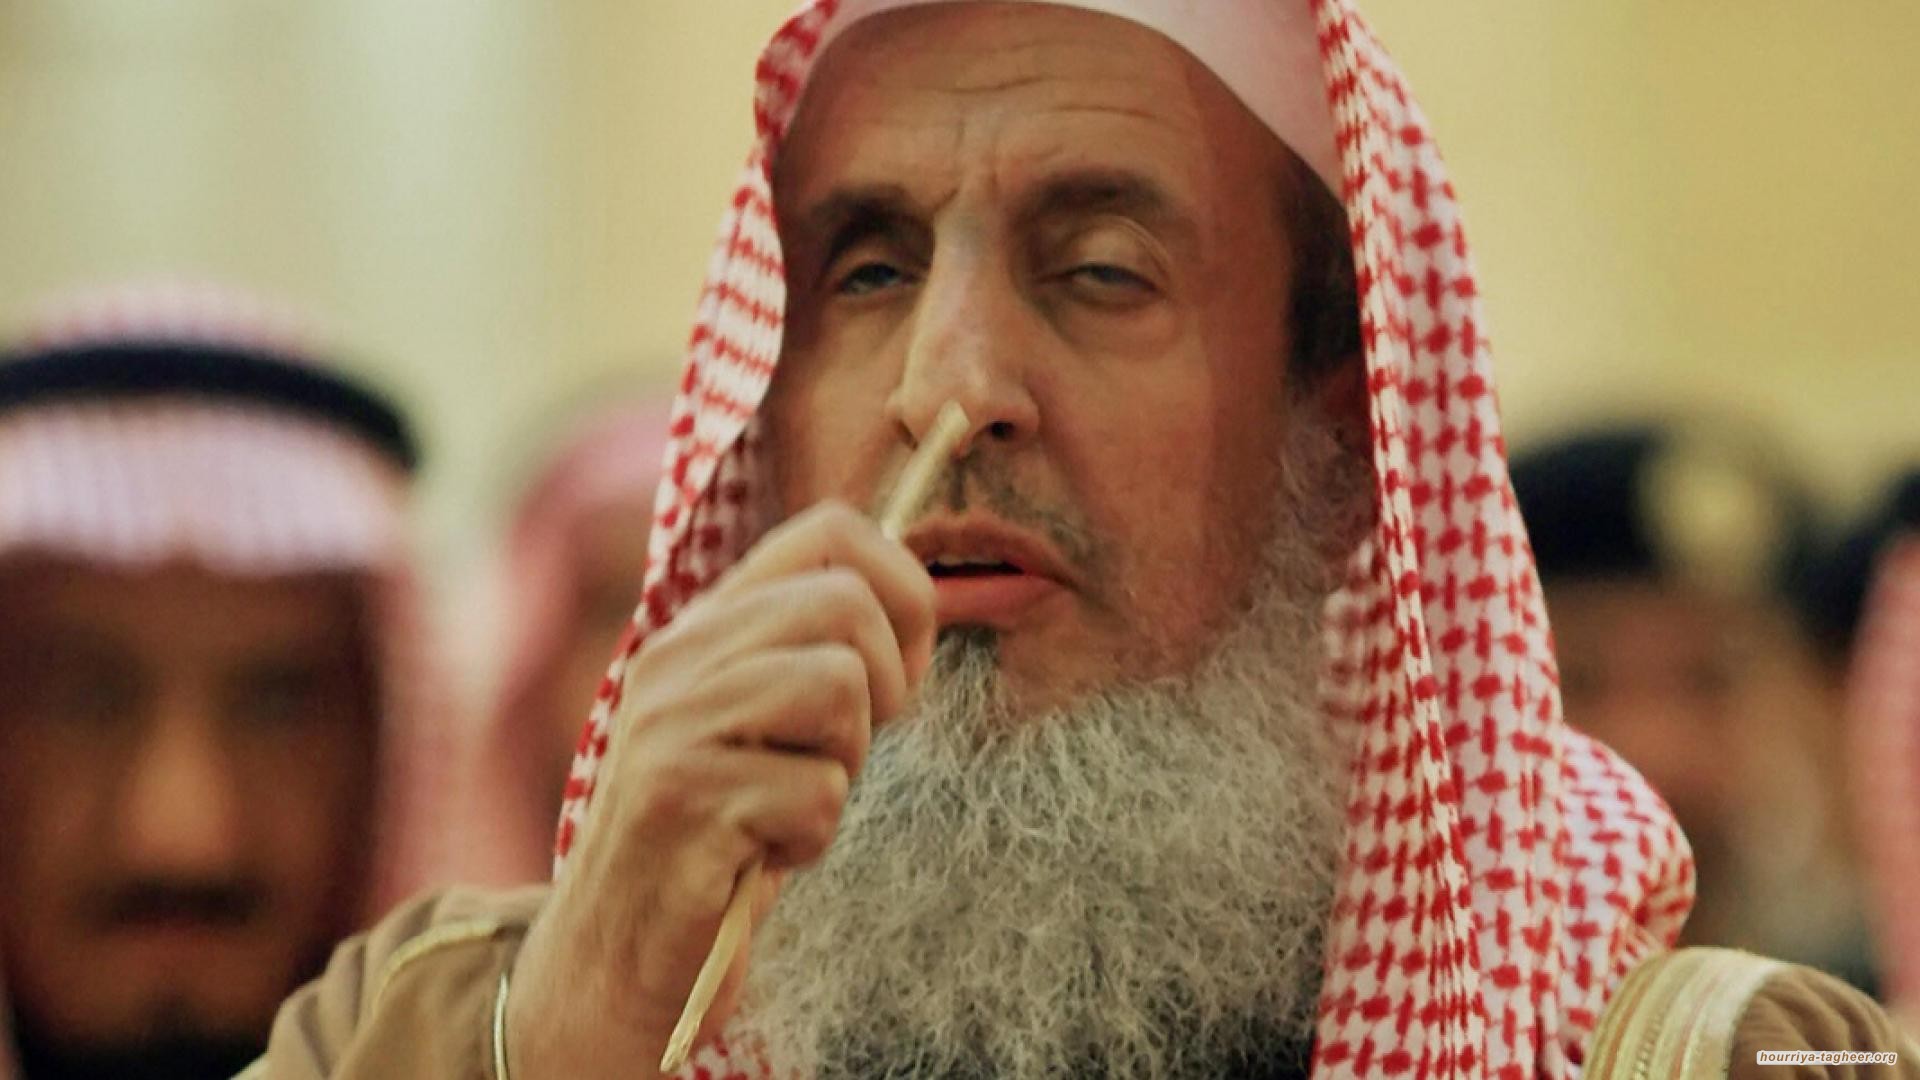 المفتي الاعظم عبدالعزيز آل الشيخ ستتم الإطاحة به قريبا